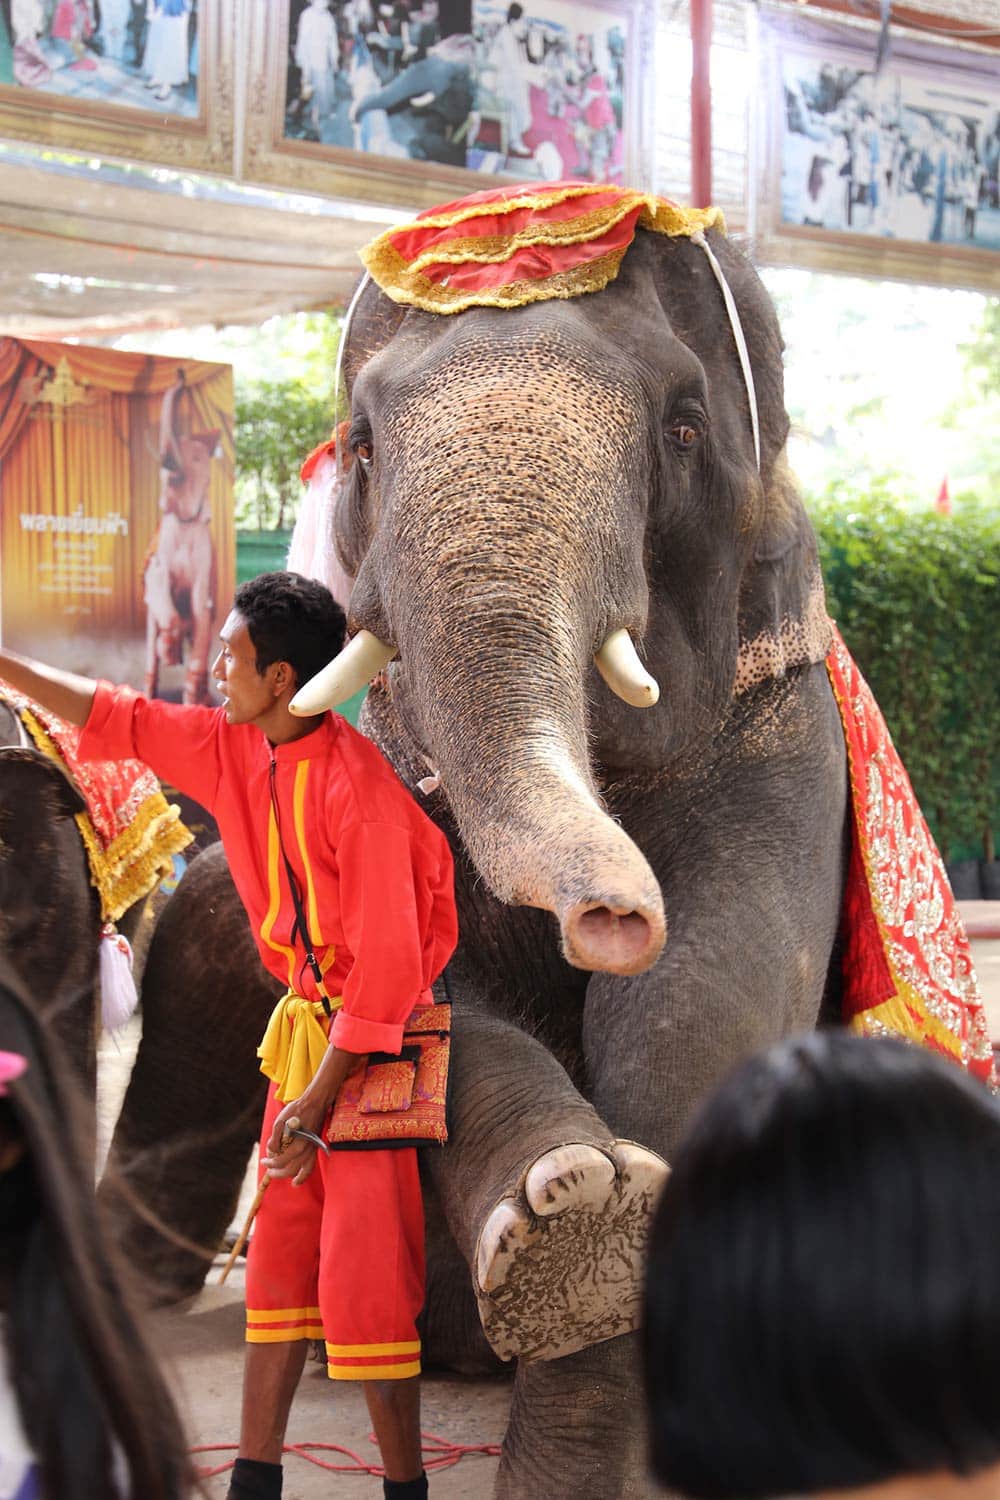 Os shows com elefantes na Tailândia não são legais e devem ser evitados! Faça turismo responsável e não apoie exploração dos animais! Conheça mais sobre no post!